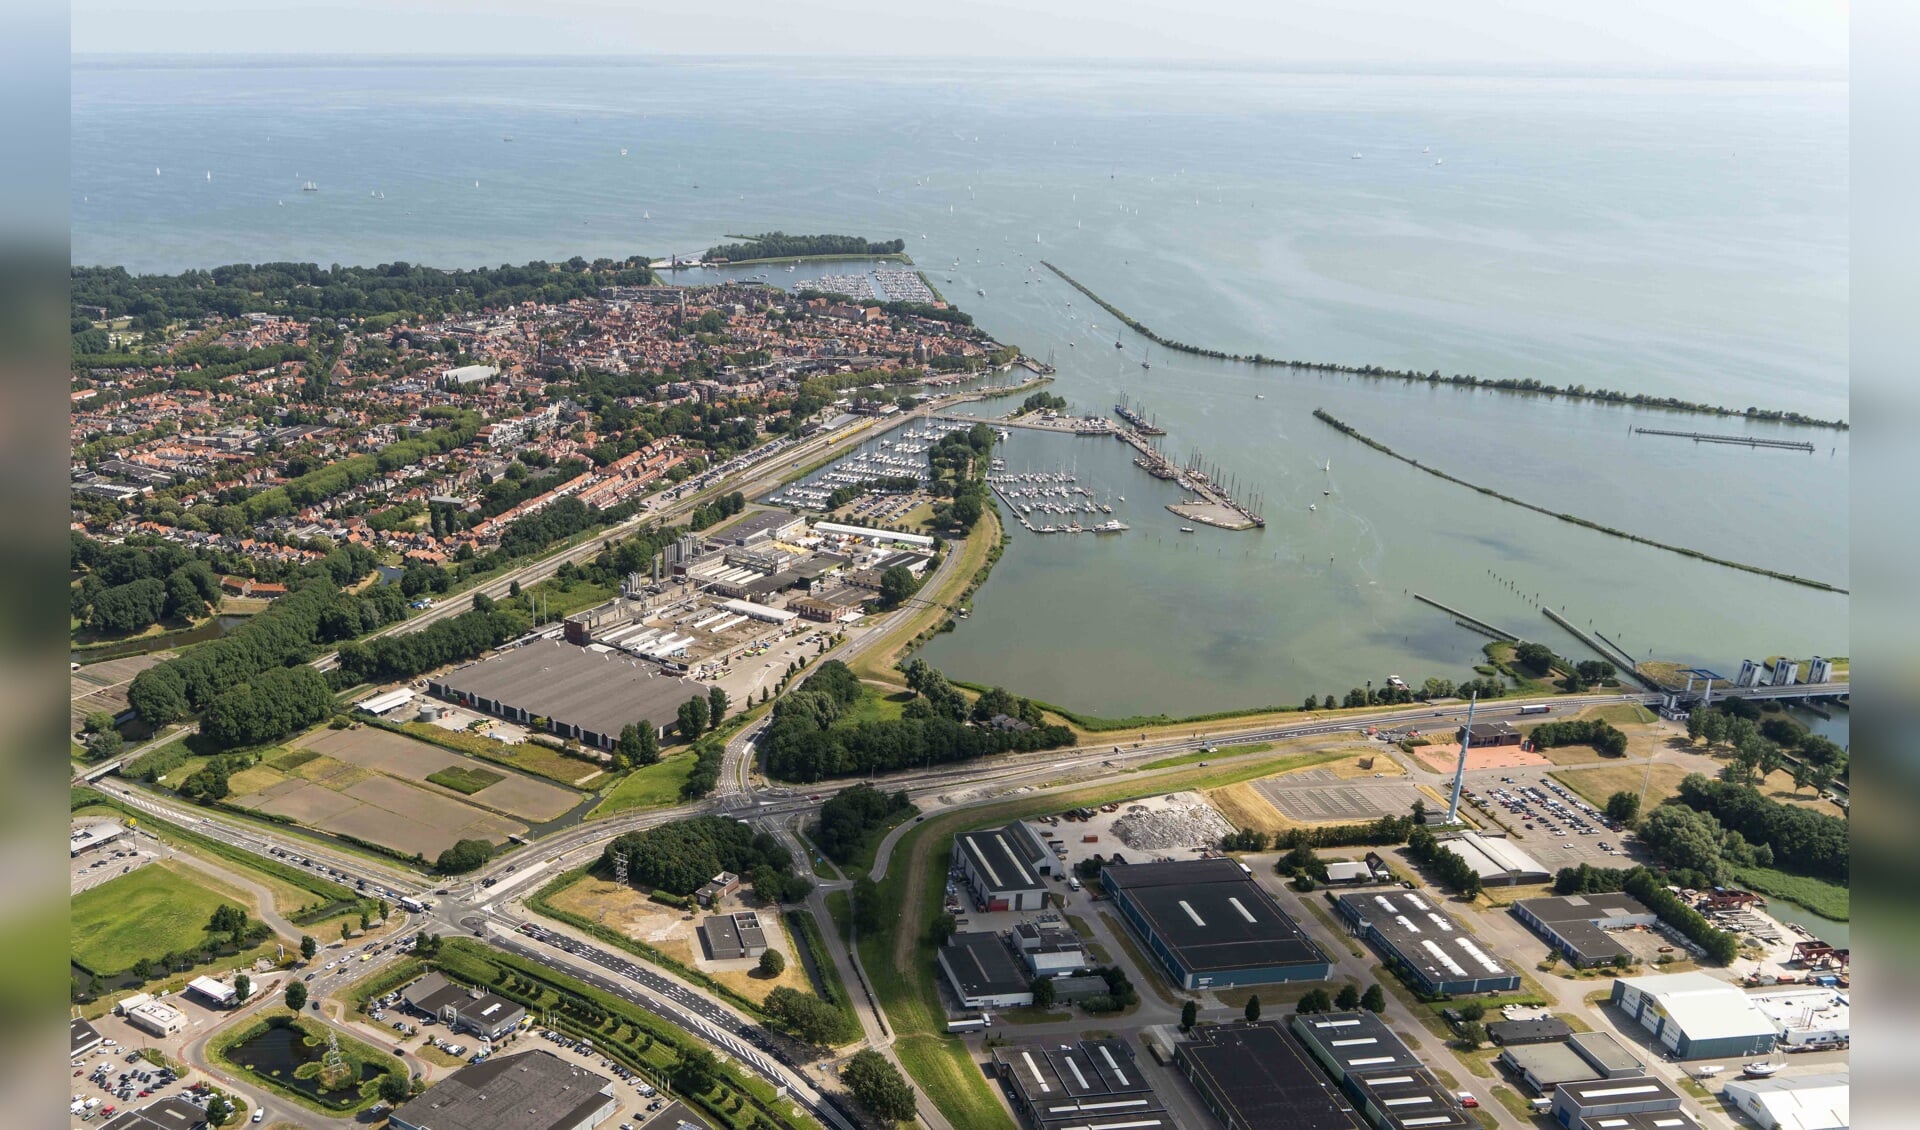 De Houtribdijk tussen Enkhuizen en Lelystad is van 31 augustus tot en met 3 september afgesloten voor al het verkeer. (Foto: aangeleverd)